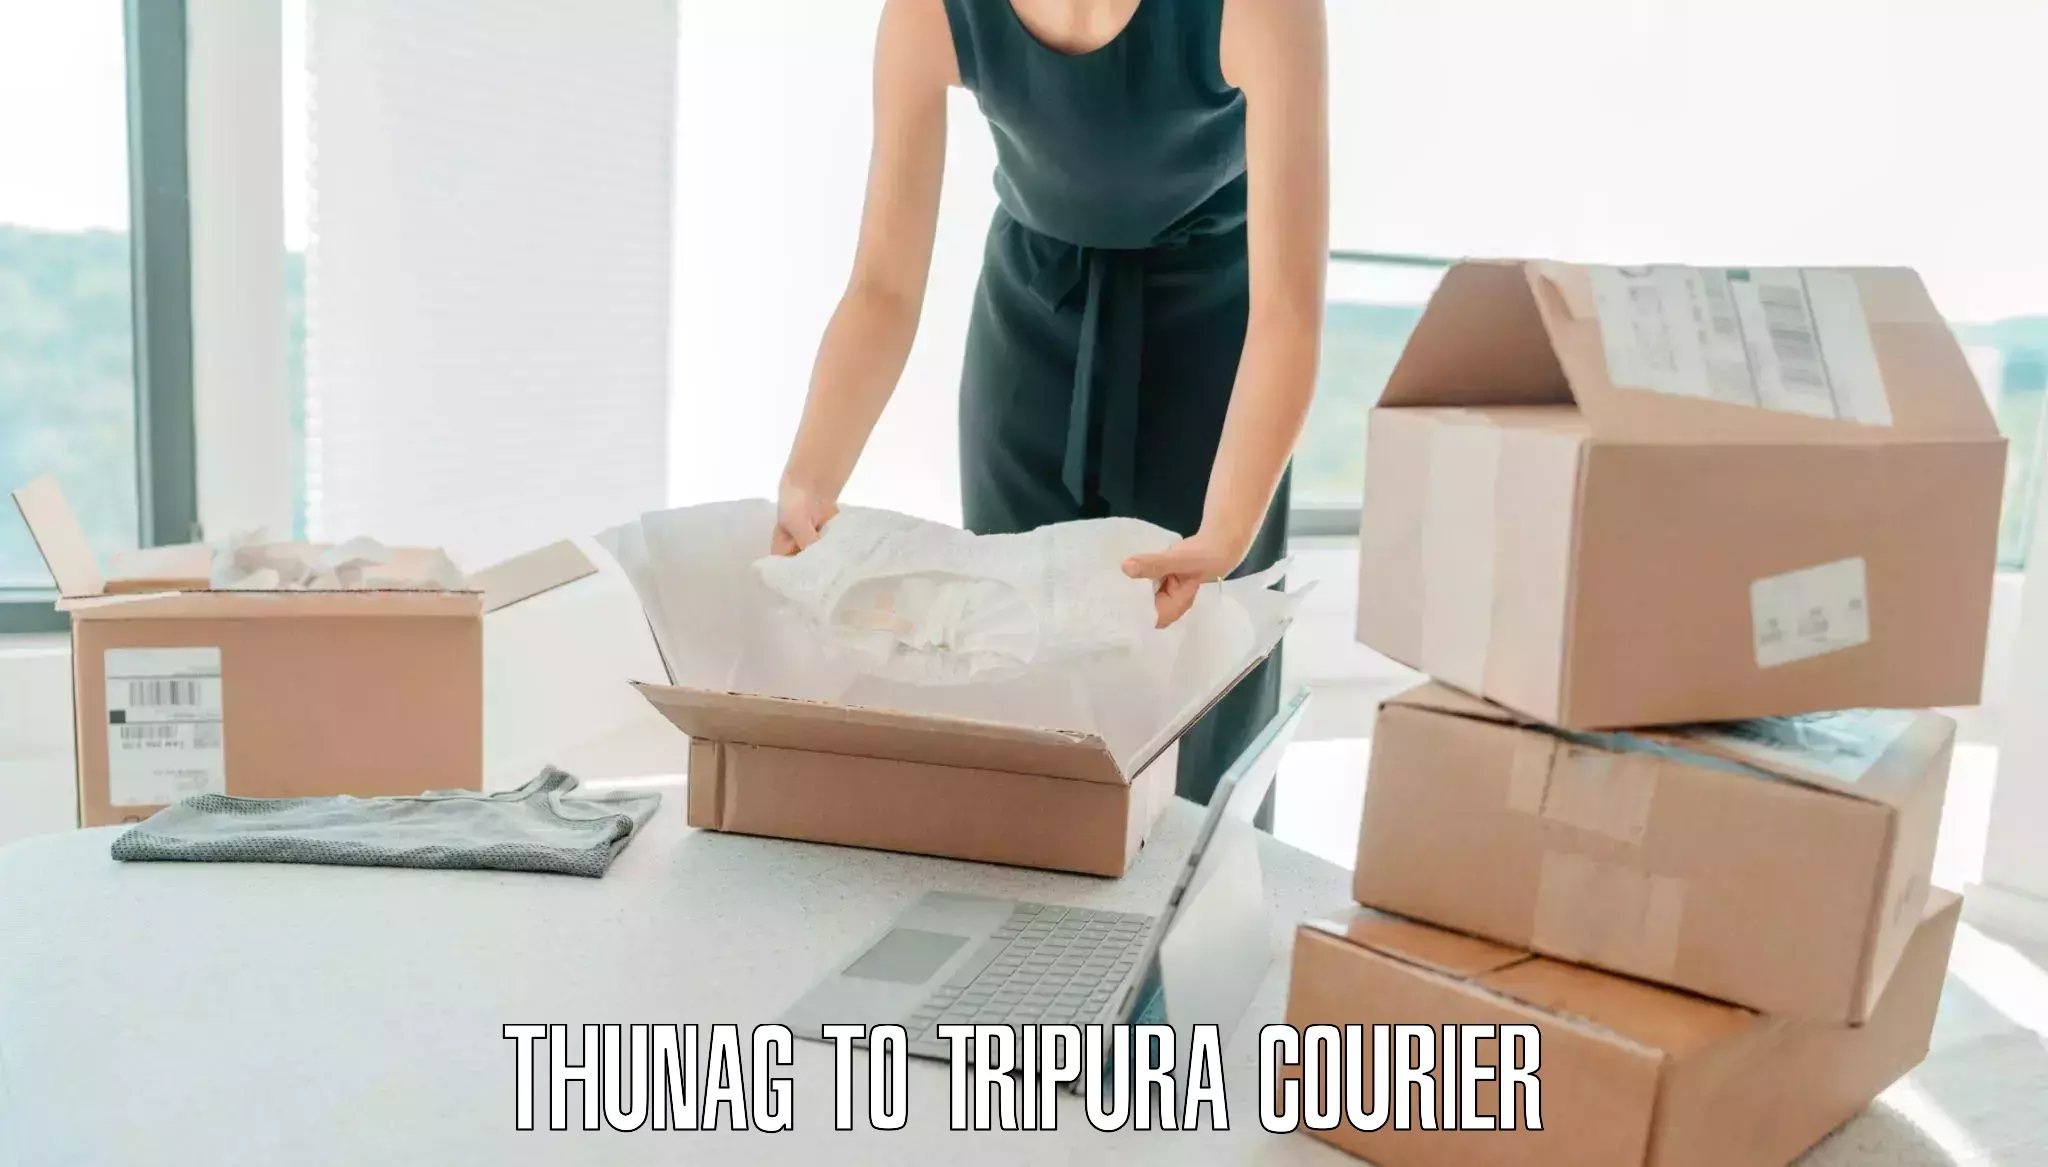 Digital baggage courier in Thunag to IIIT Agartala